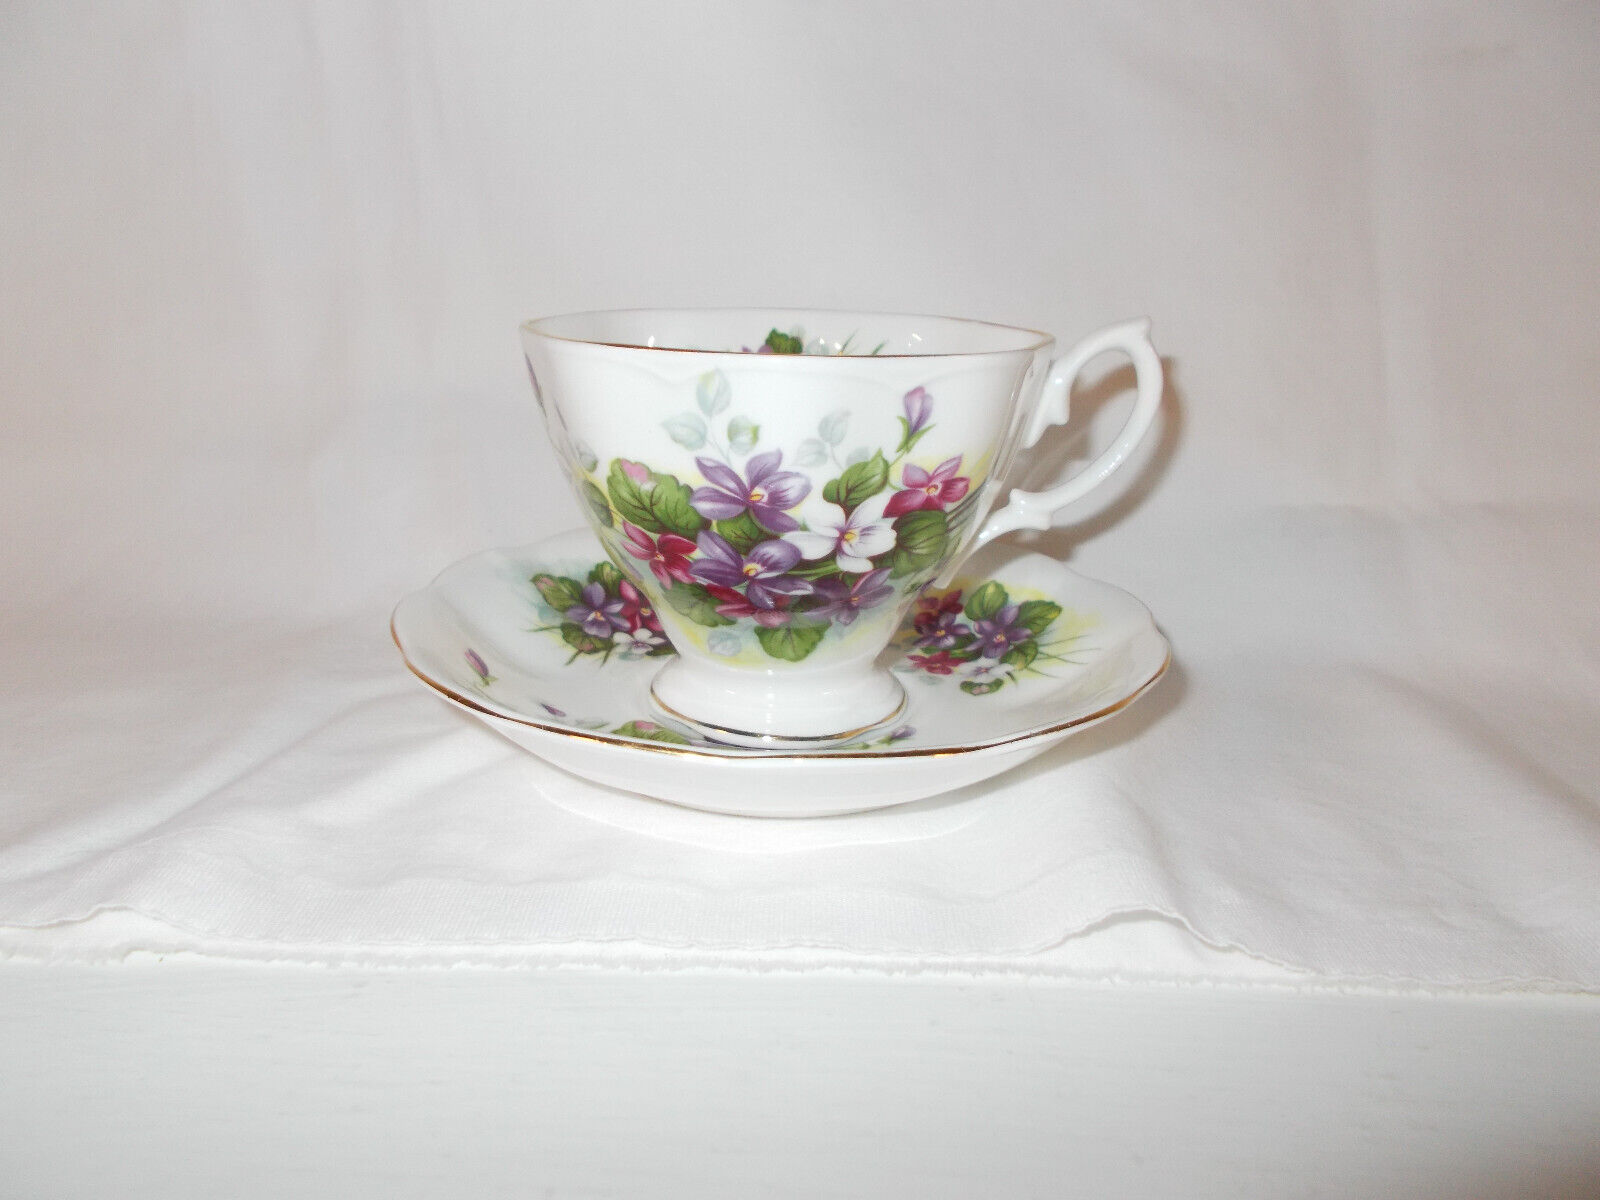  VTG Royal Albert bone china teacup & saucer w/violets gold color trim ruffled